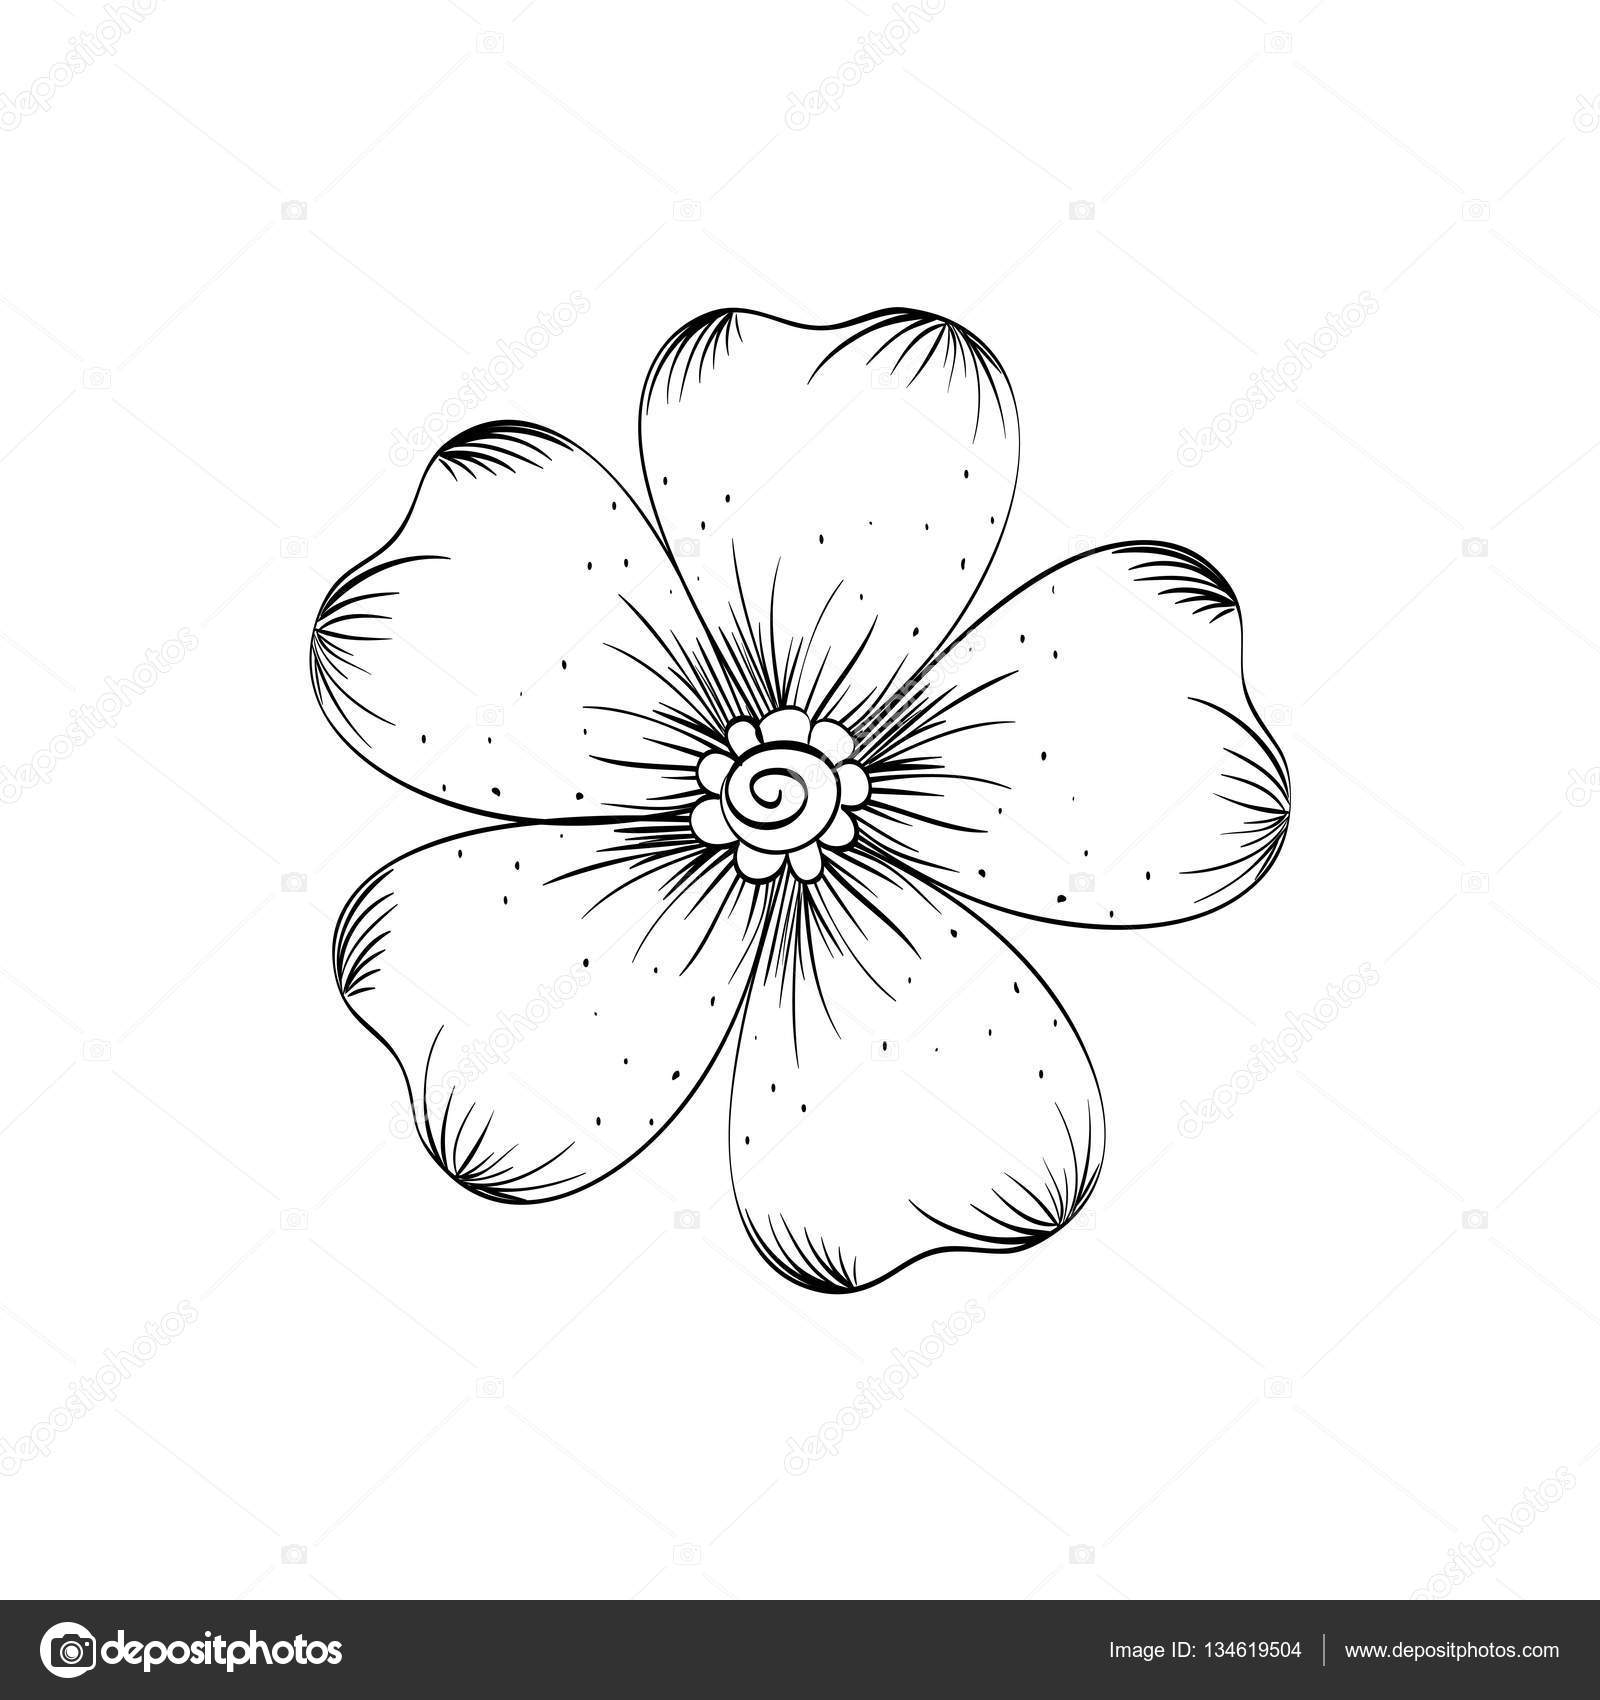 Schöne Blume in schwarz / weiß — Stockvektor © djv #134619504